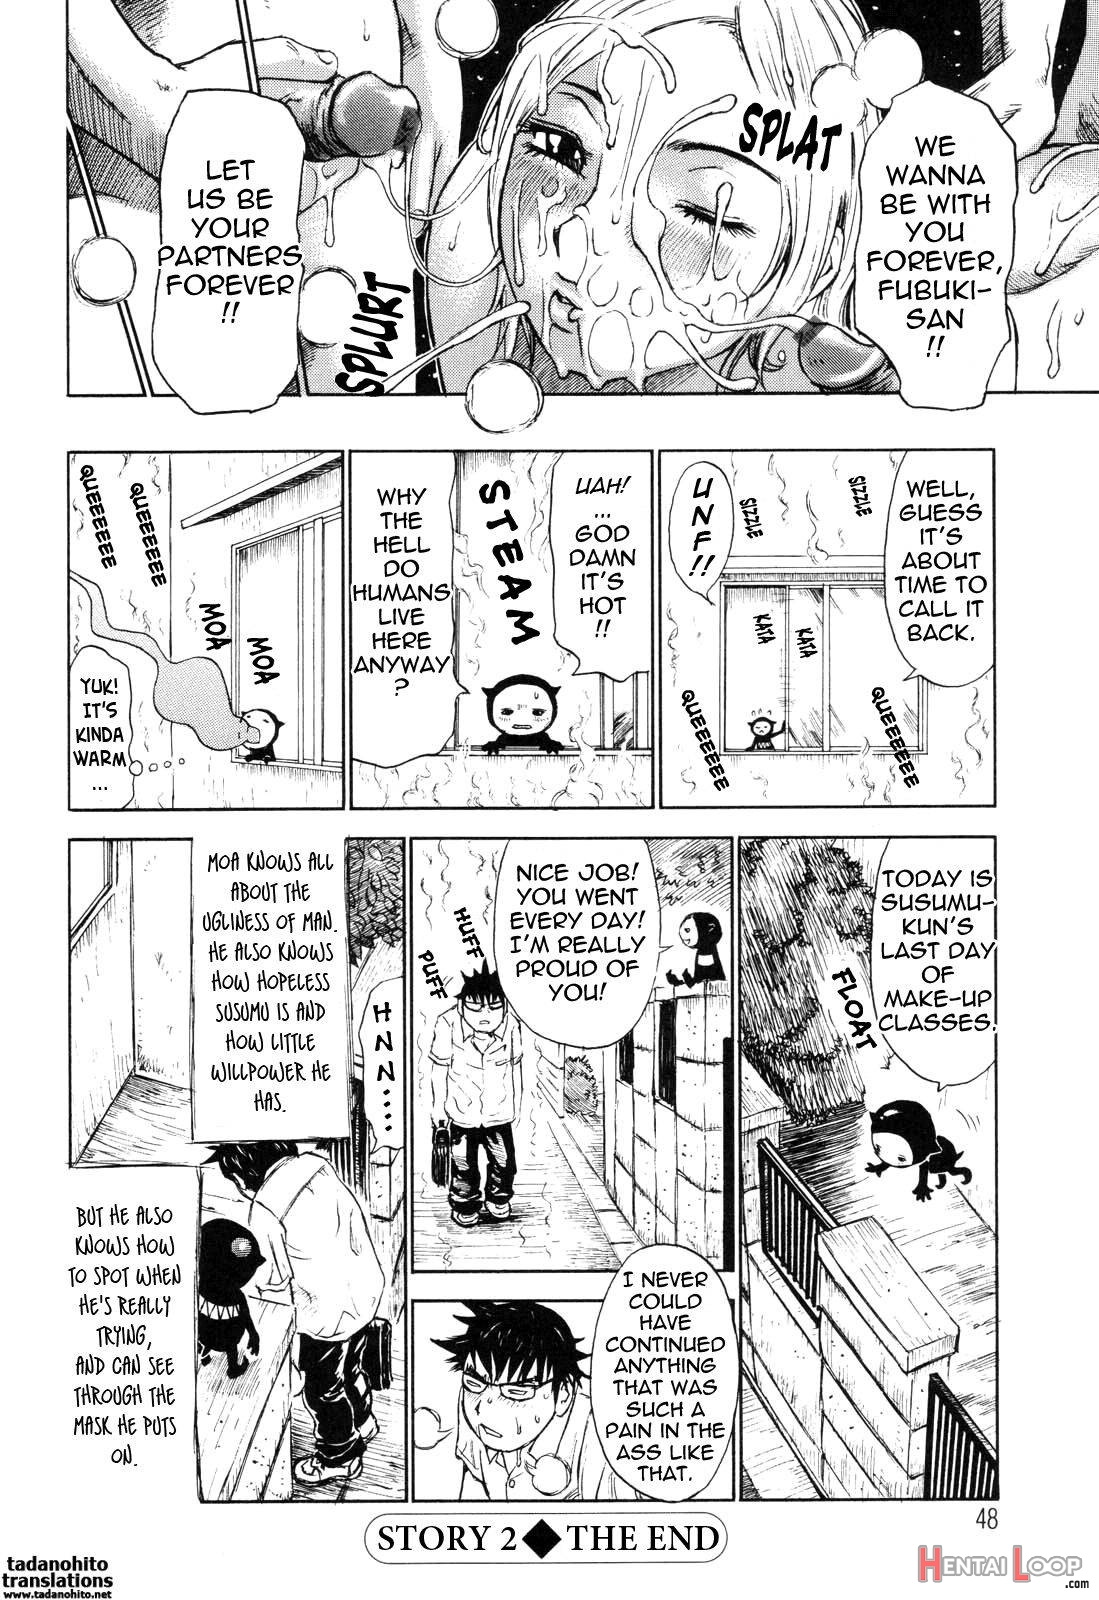 Umarete Hajimete page 48